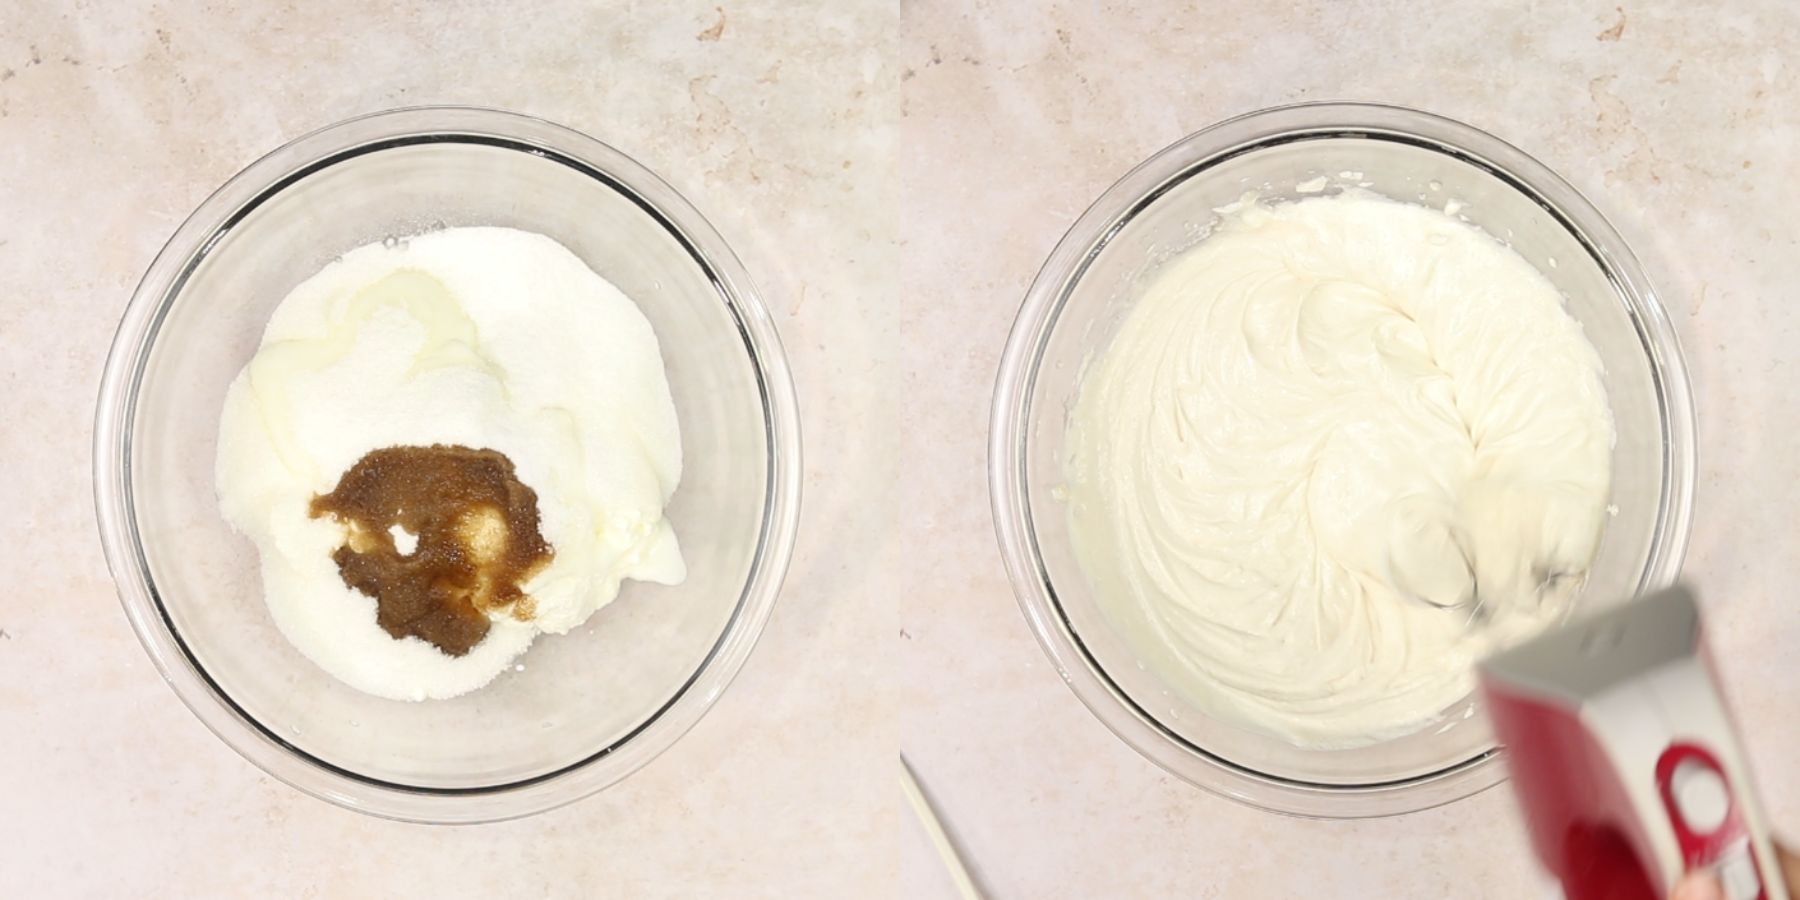 Cheesecake process shots.